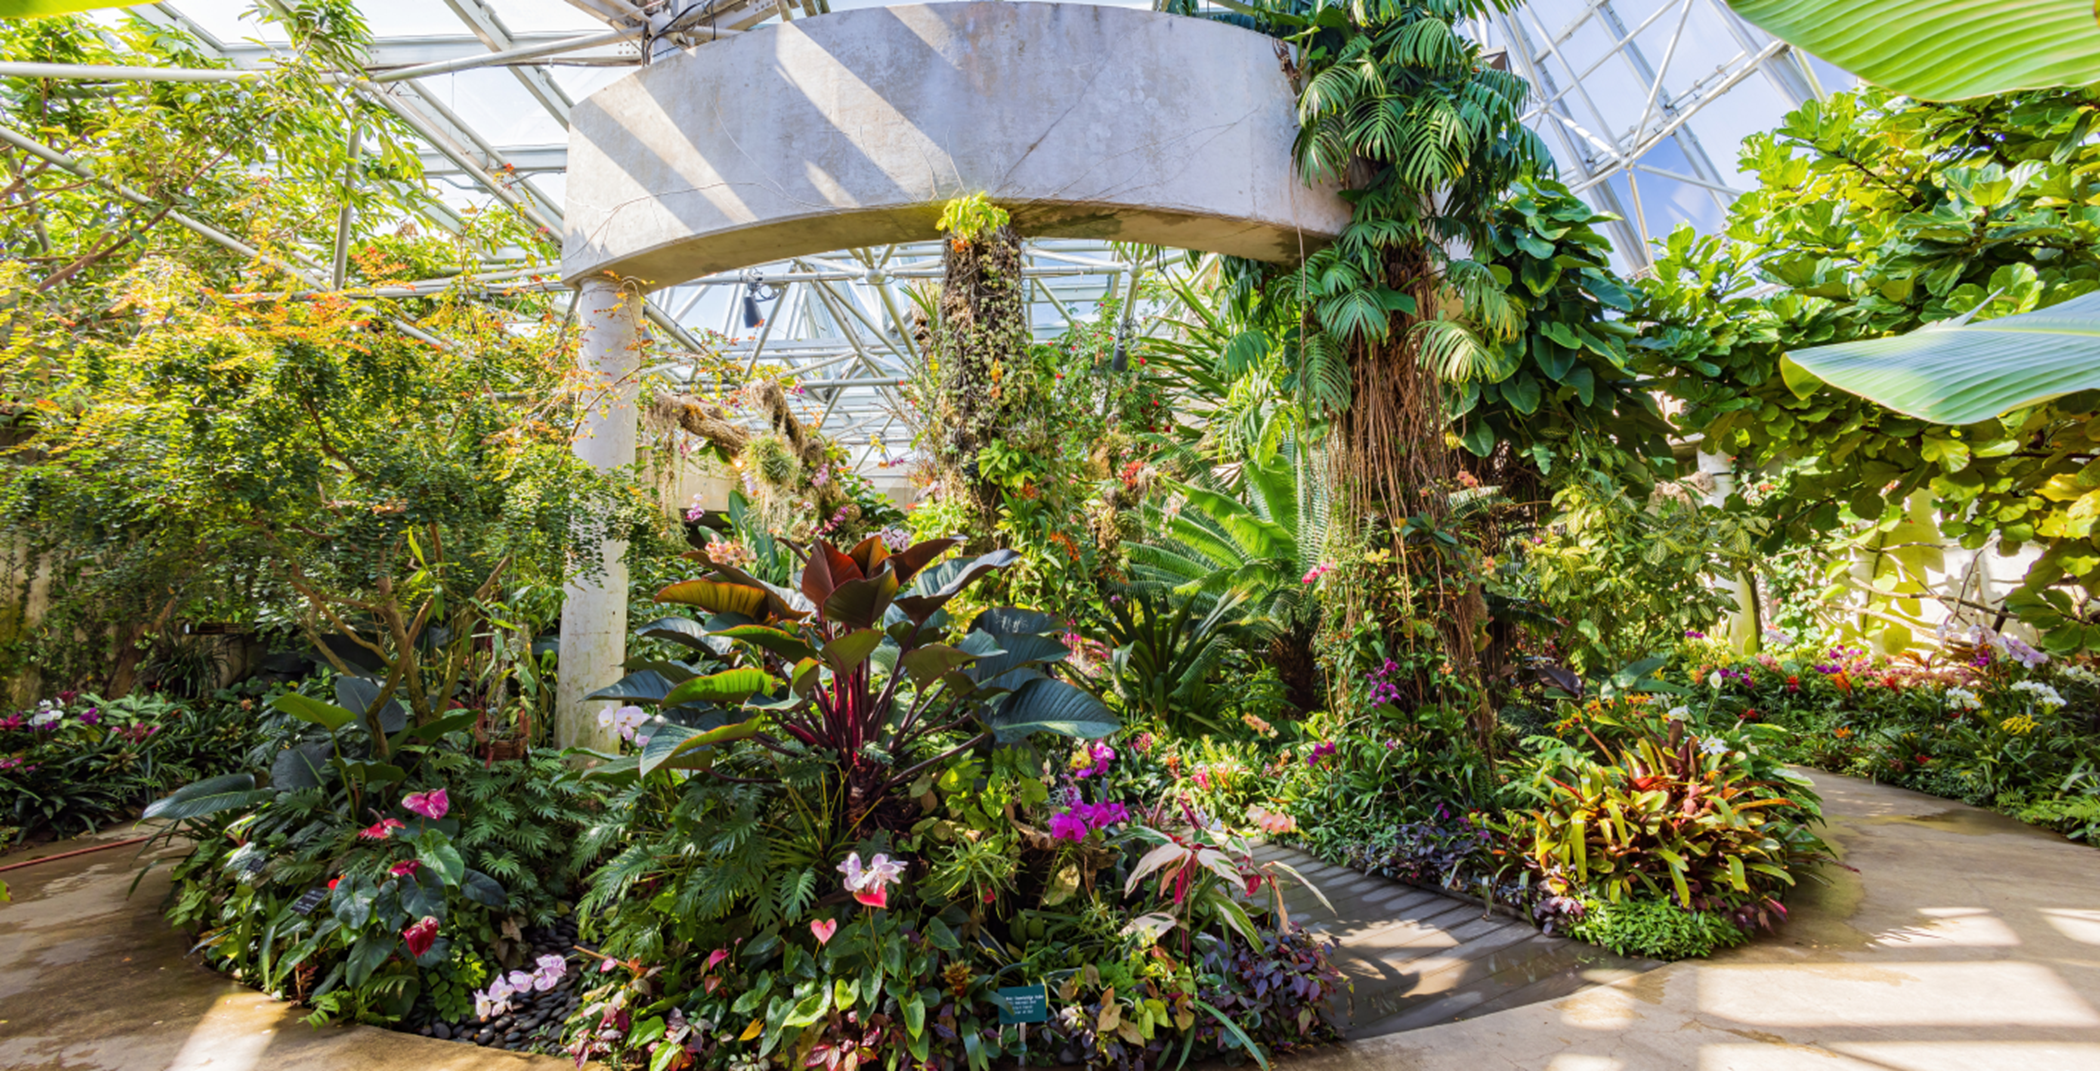 Visit botanical gardens in San Antonio